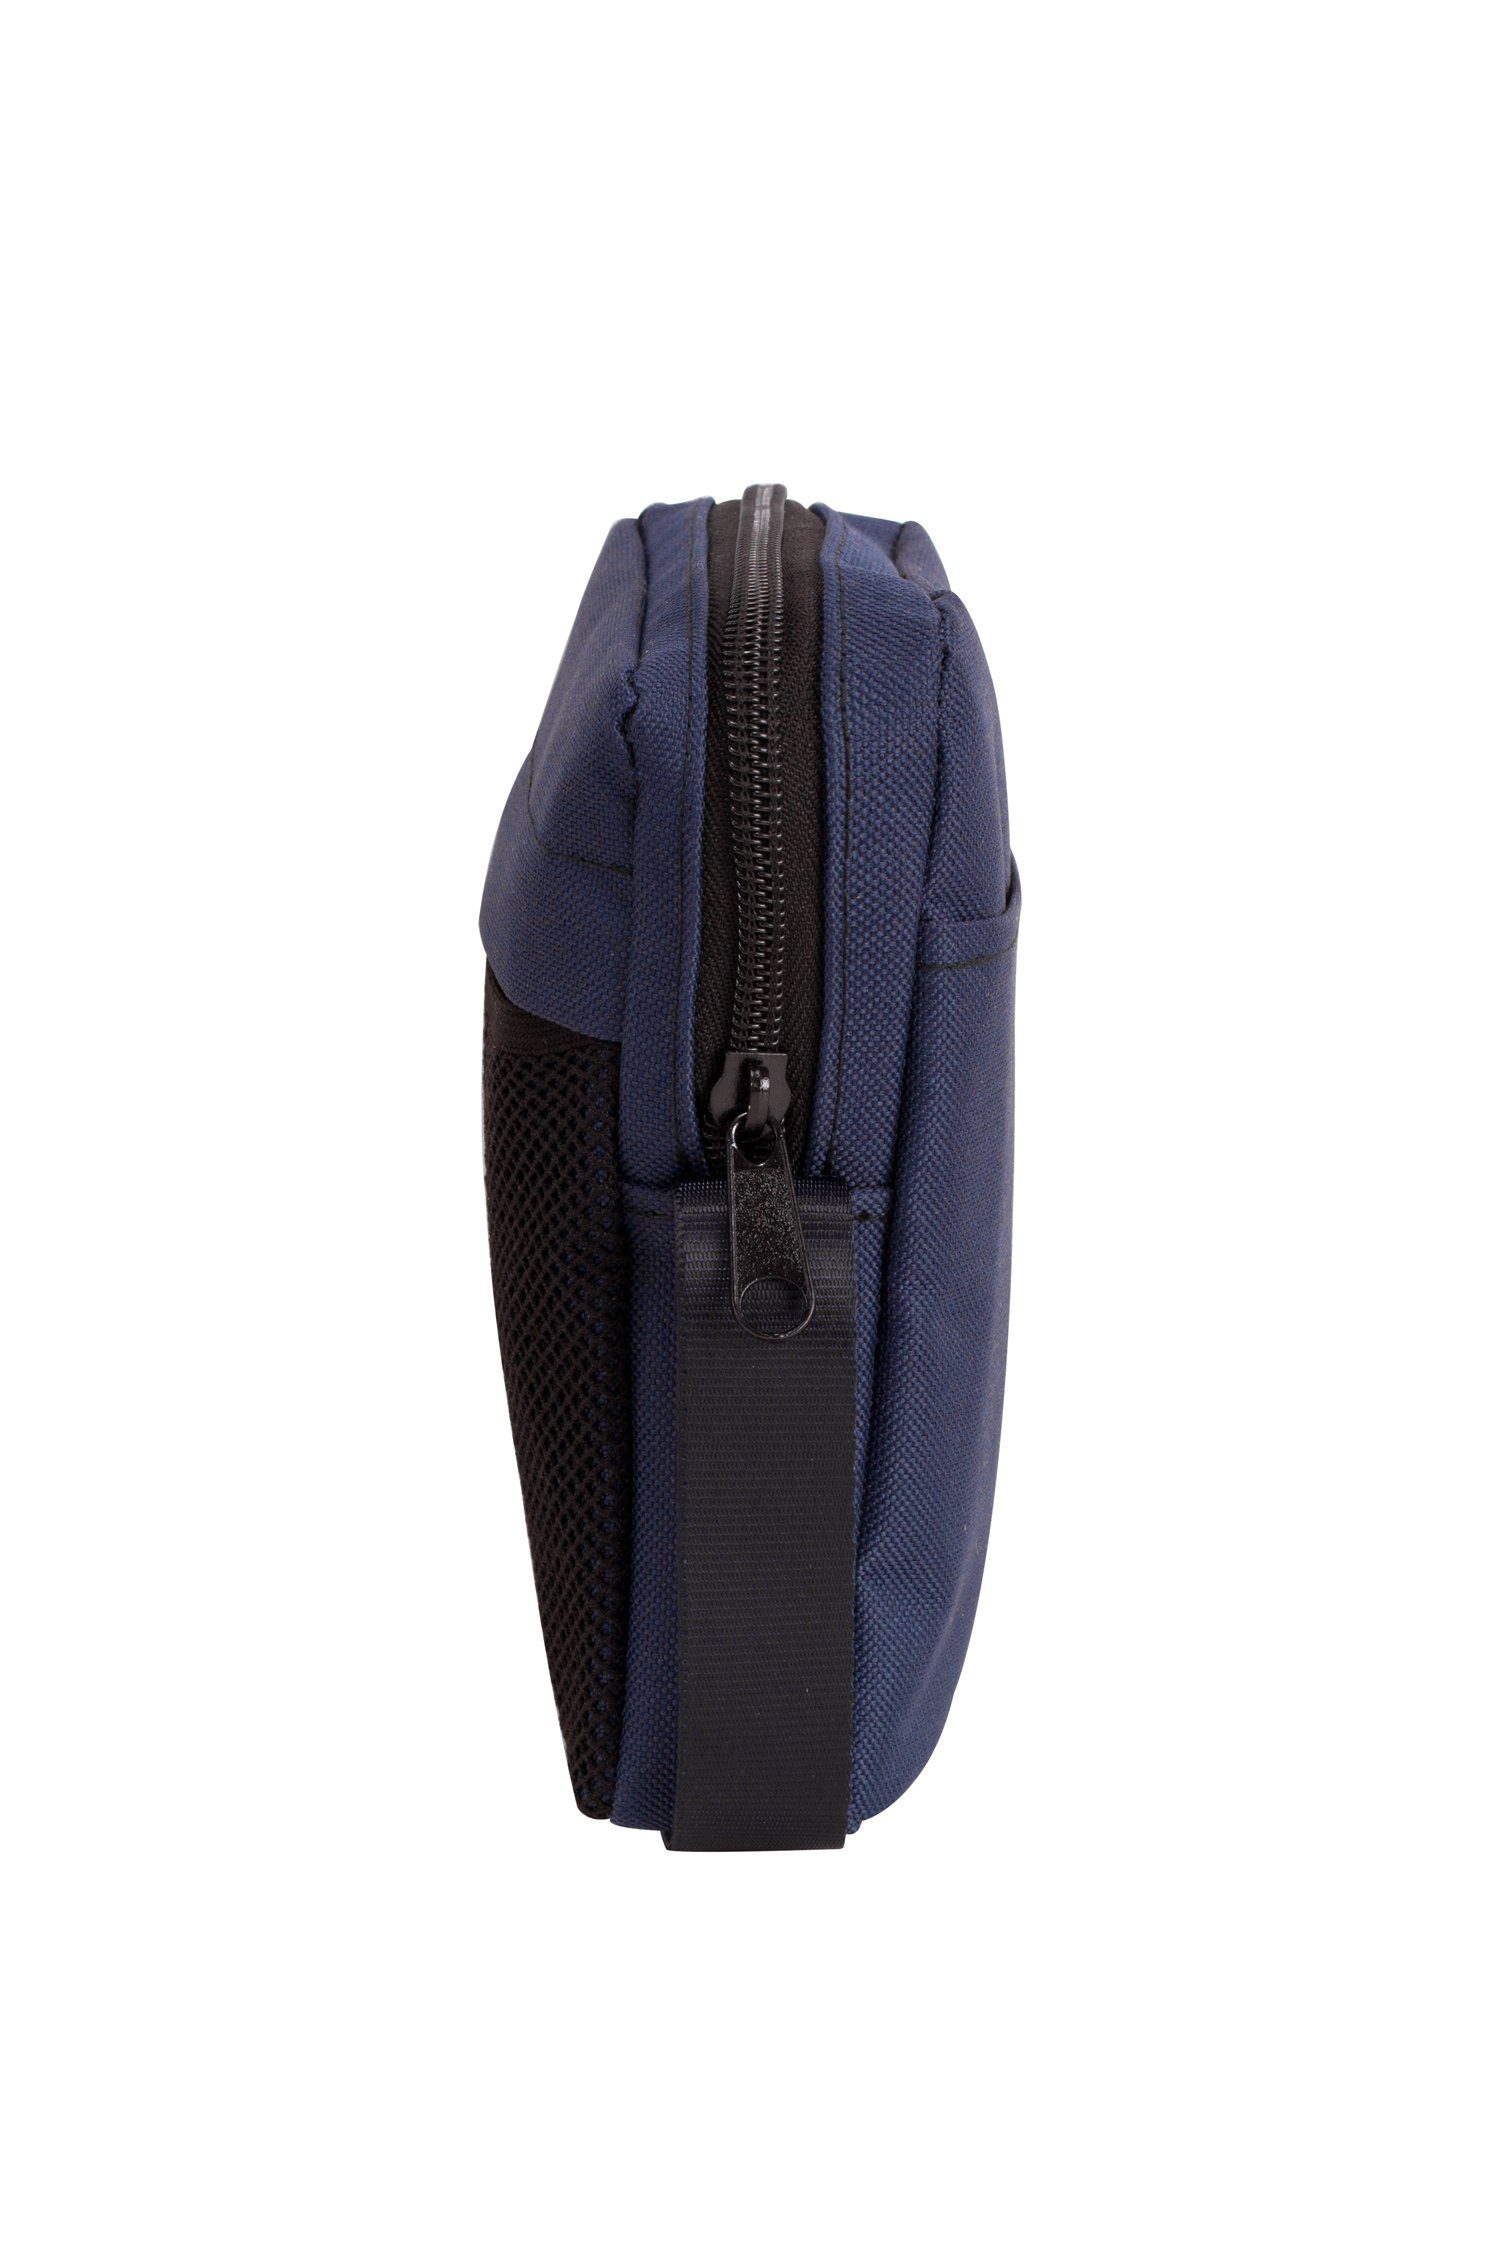 wasserabweisende Manufaktur13 - Pocket Navy Pusher Bag Umhängetasche Umhängetasche